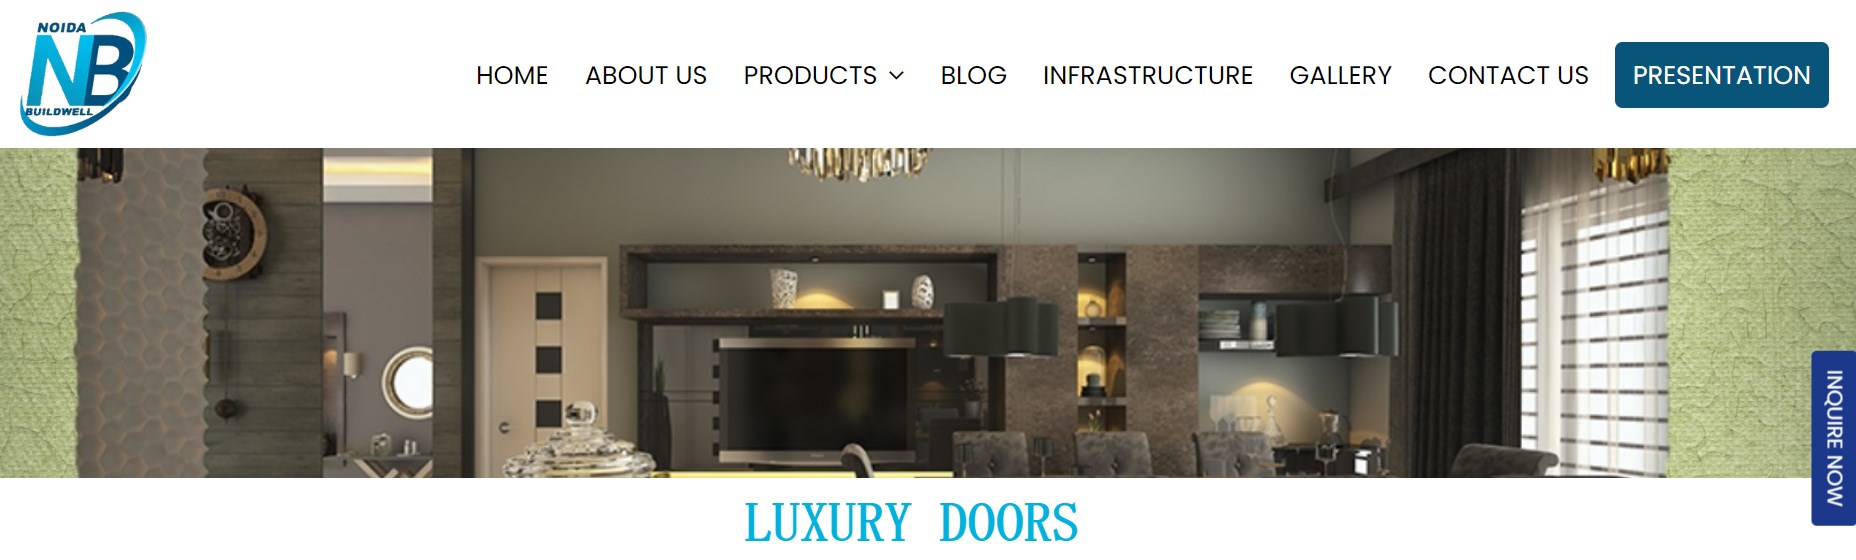 NOIDA BUILDWELL luxury wood door manufacturer